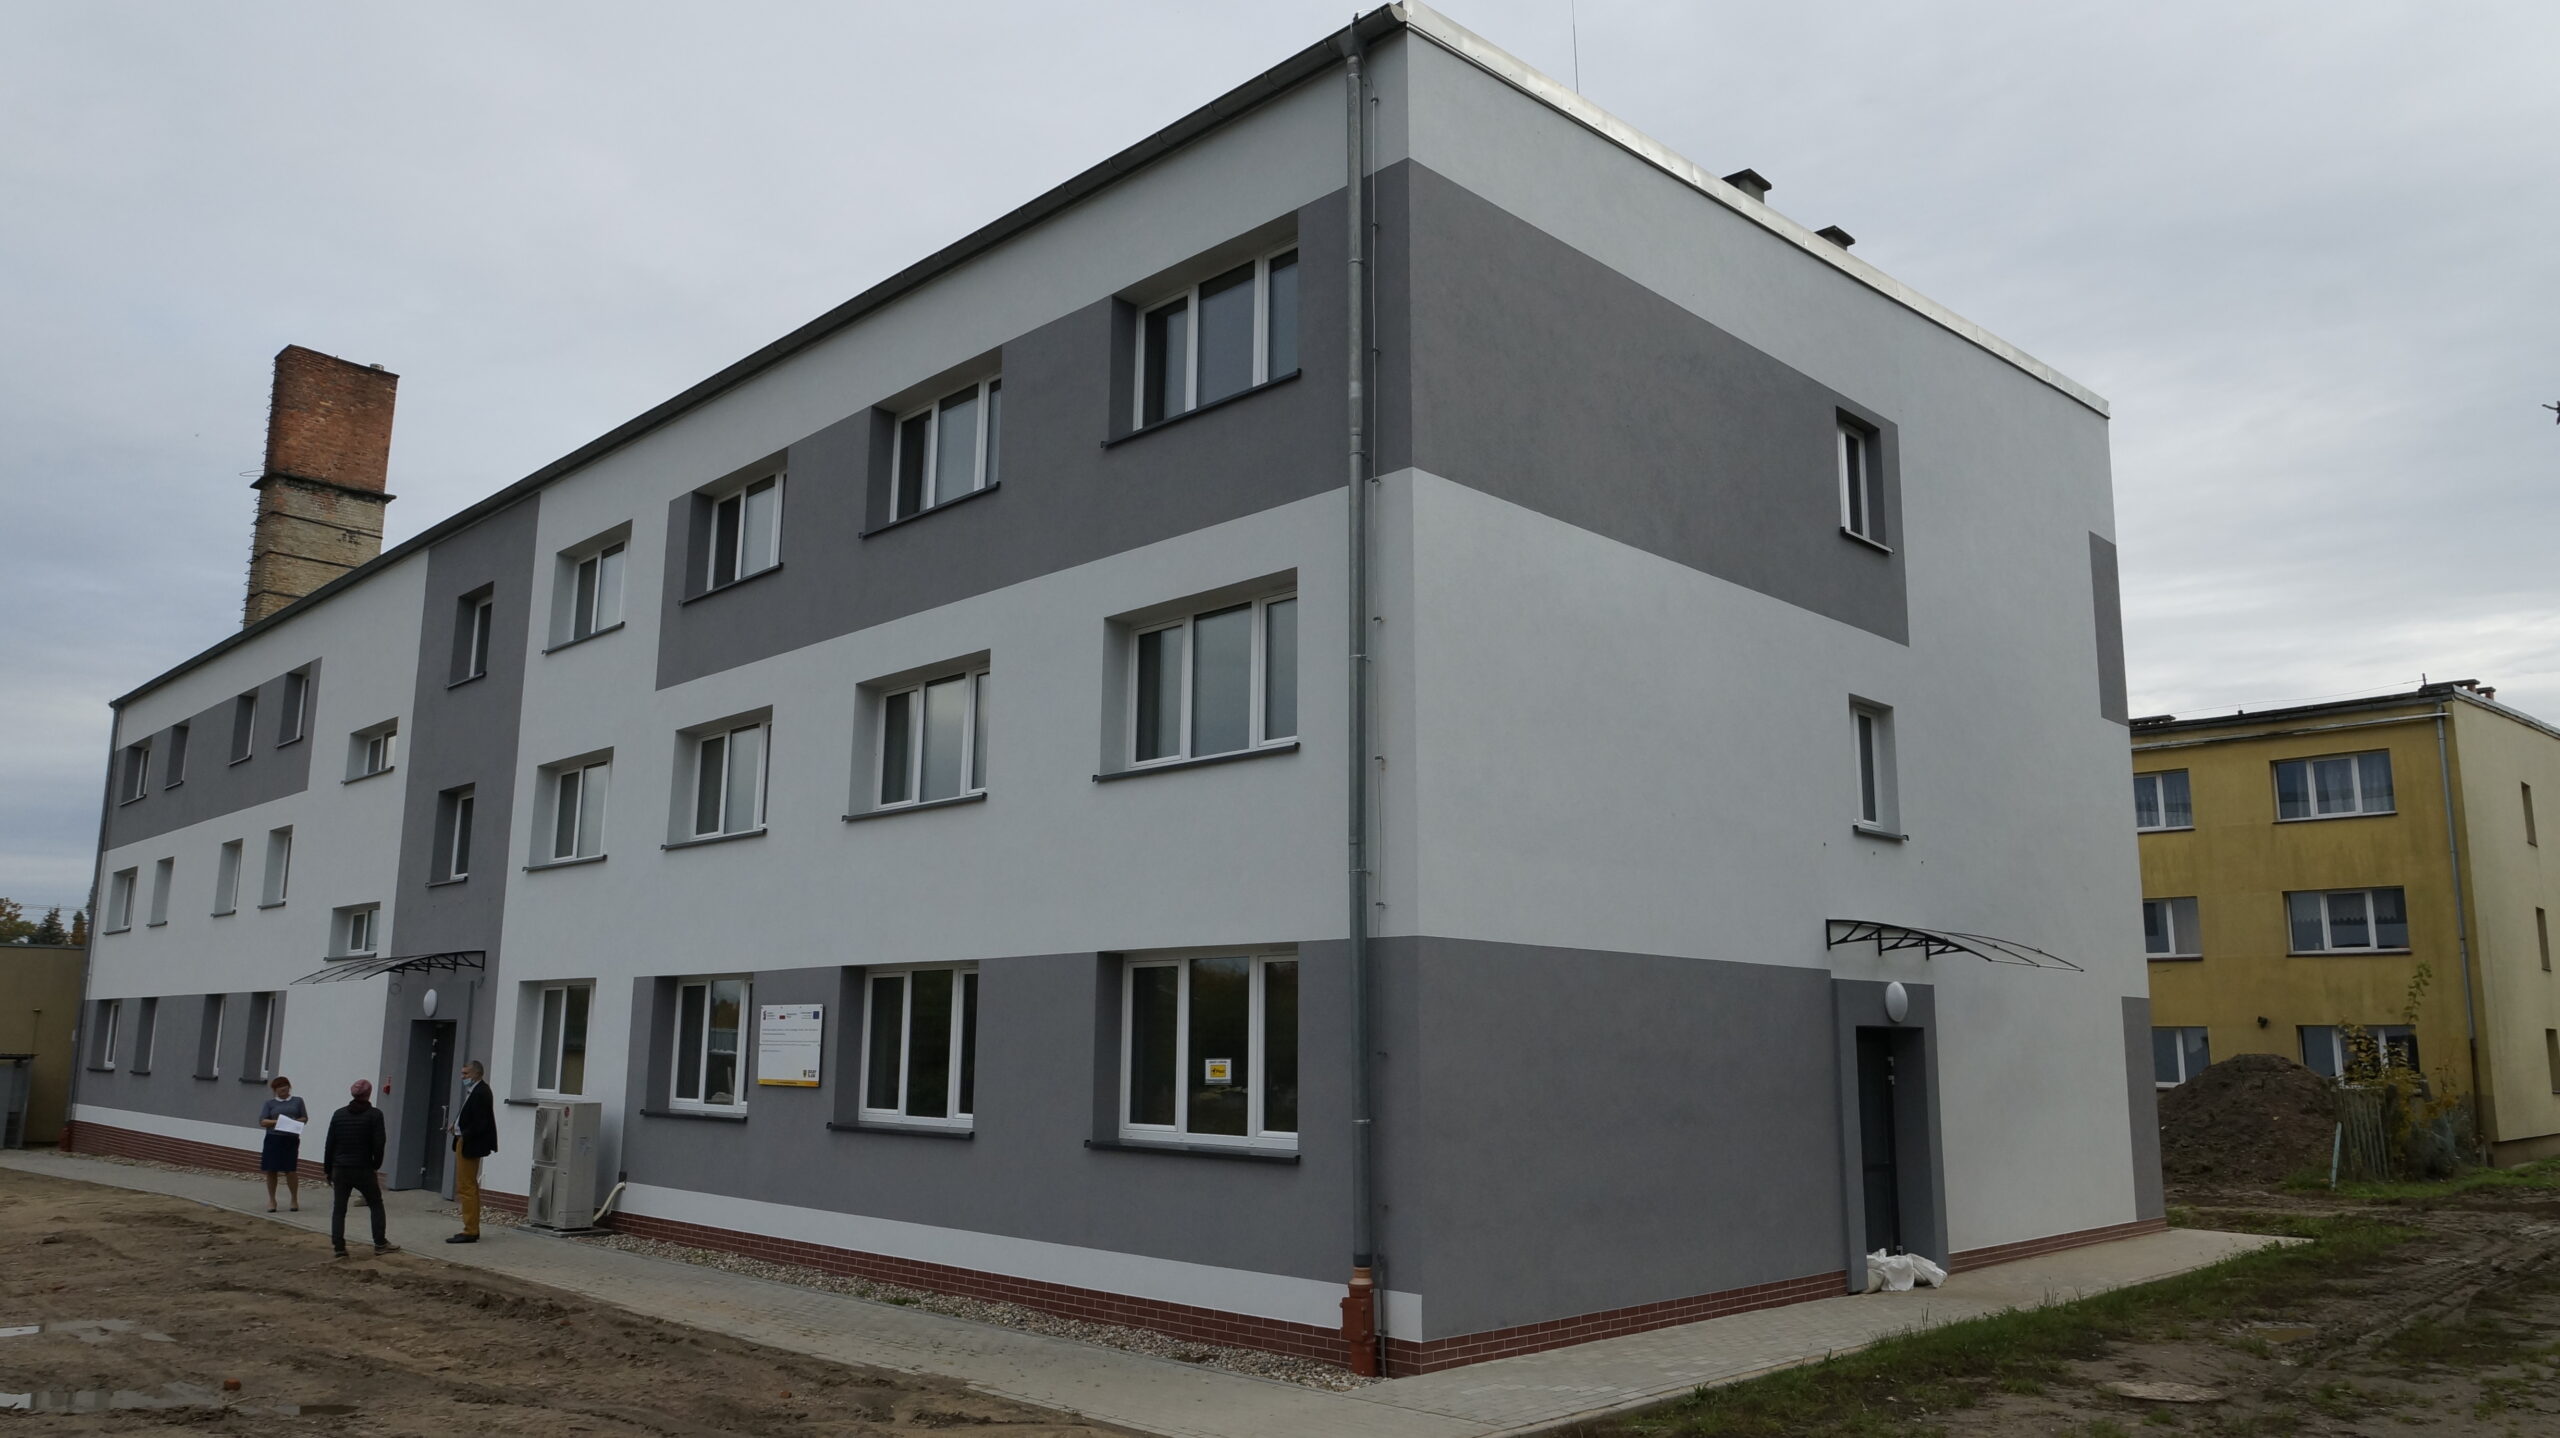 Budynek internatu Zespołu Szkół Ekonomiczno-Technicznych w Rakowicach Wielkich po rewitalizacji